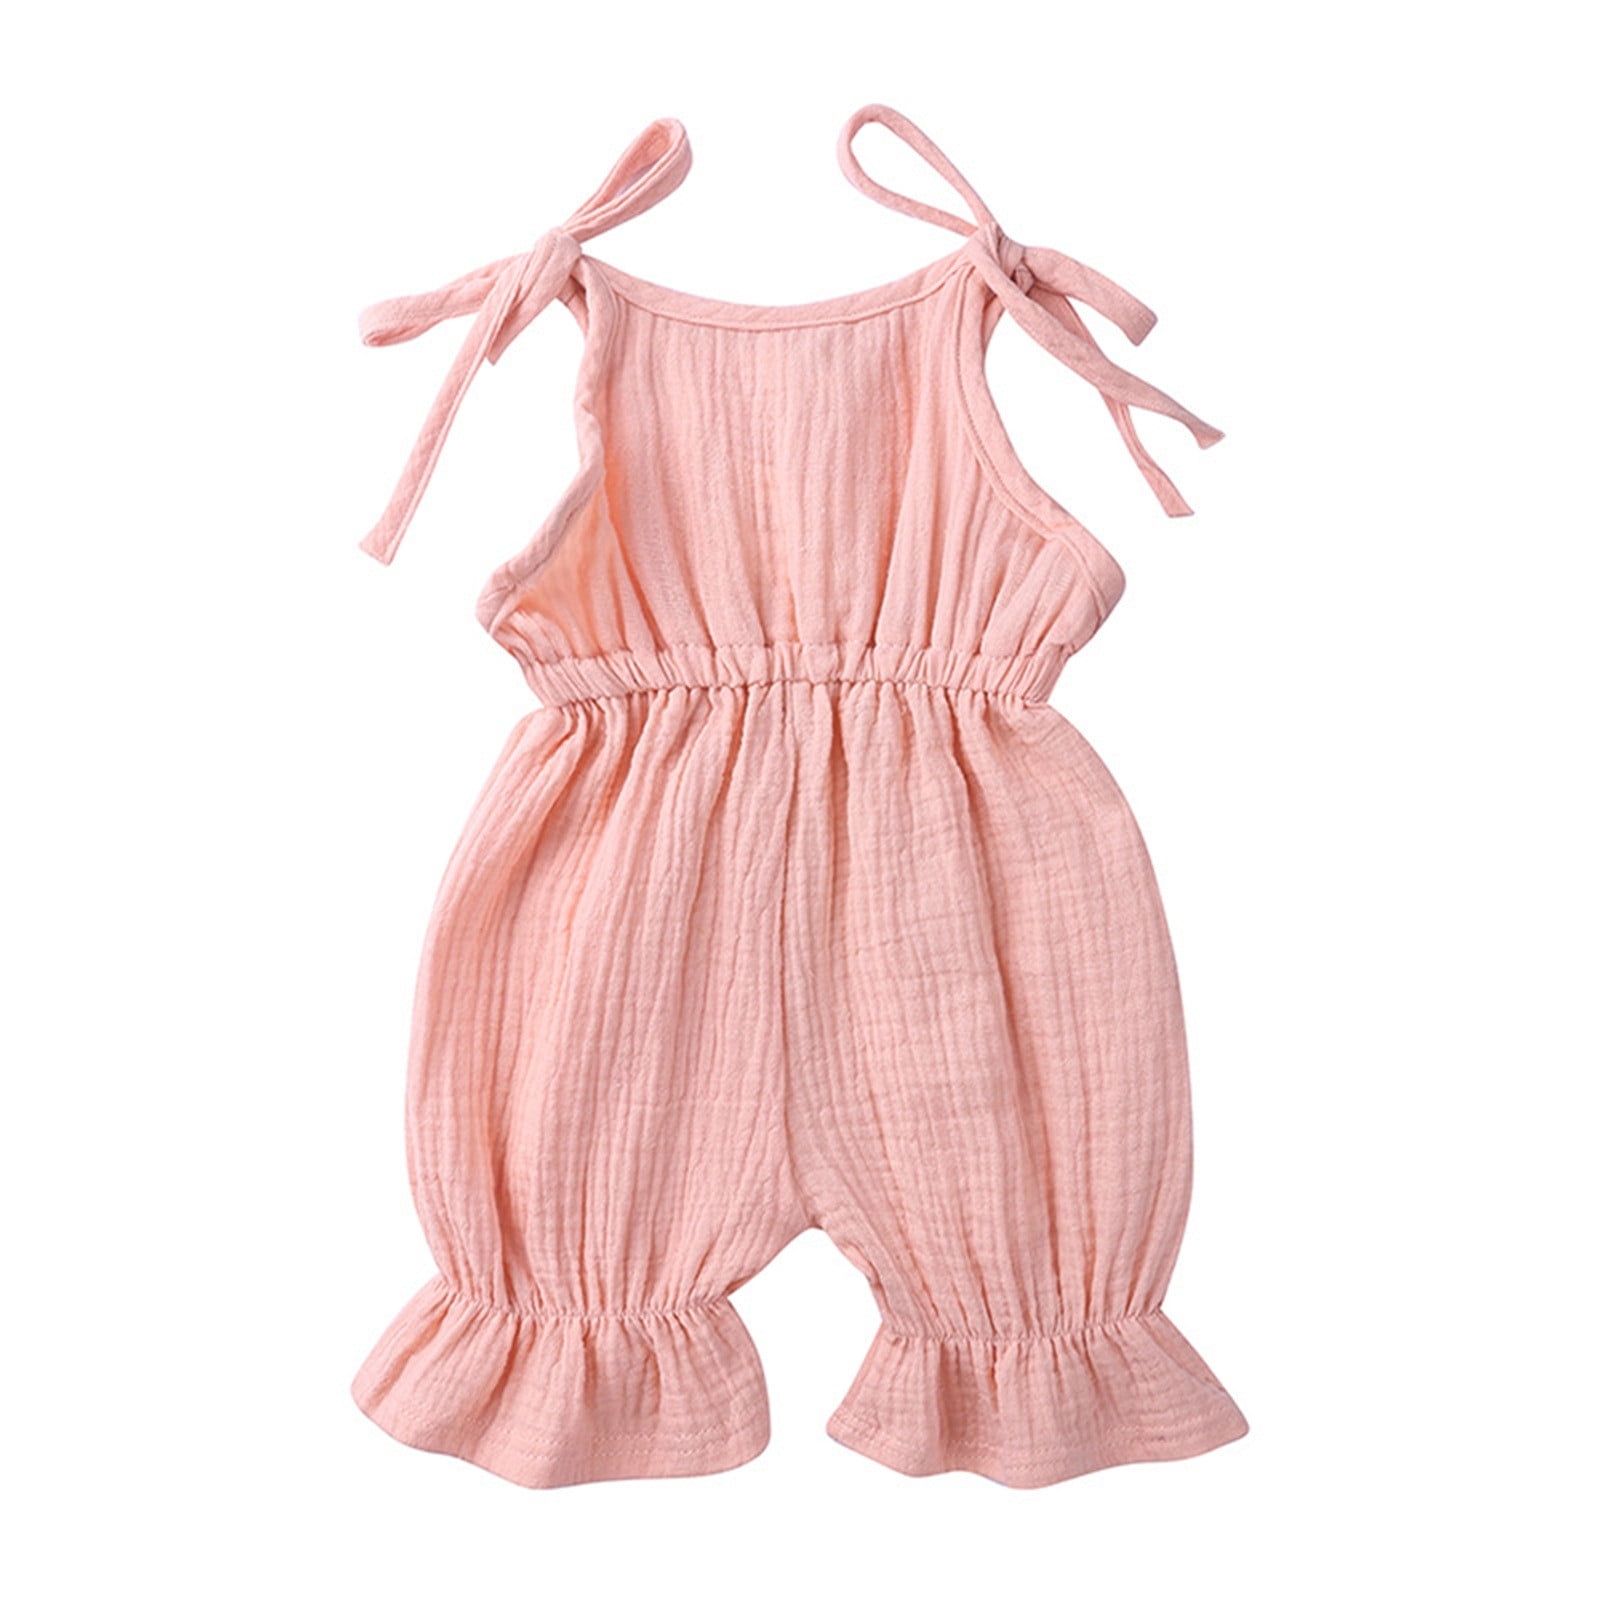 Newborn Infant Baby Girl Romper Jumpsuit Playsuit Harem Pants Outfit Clothes Set 